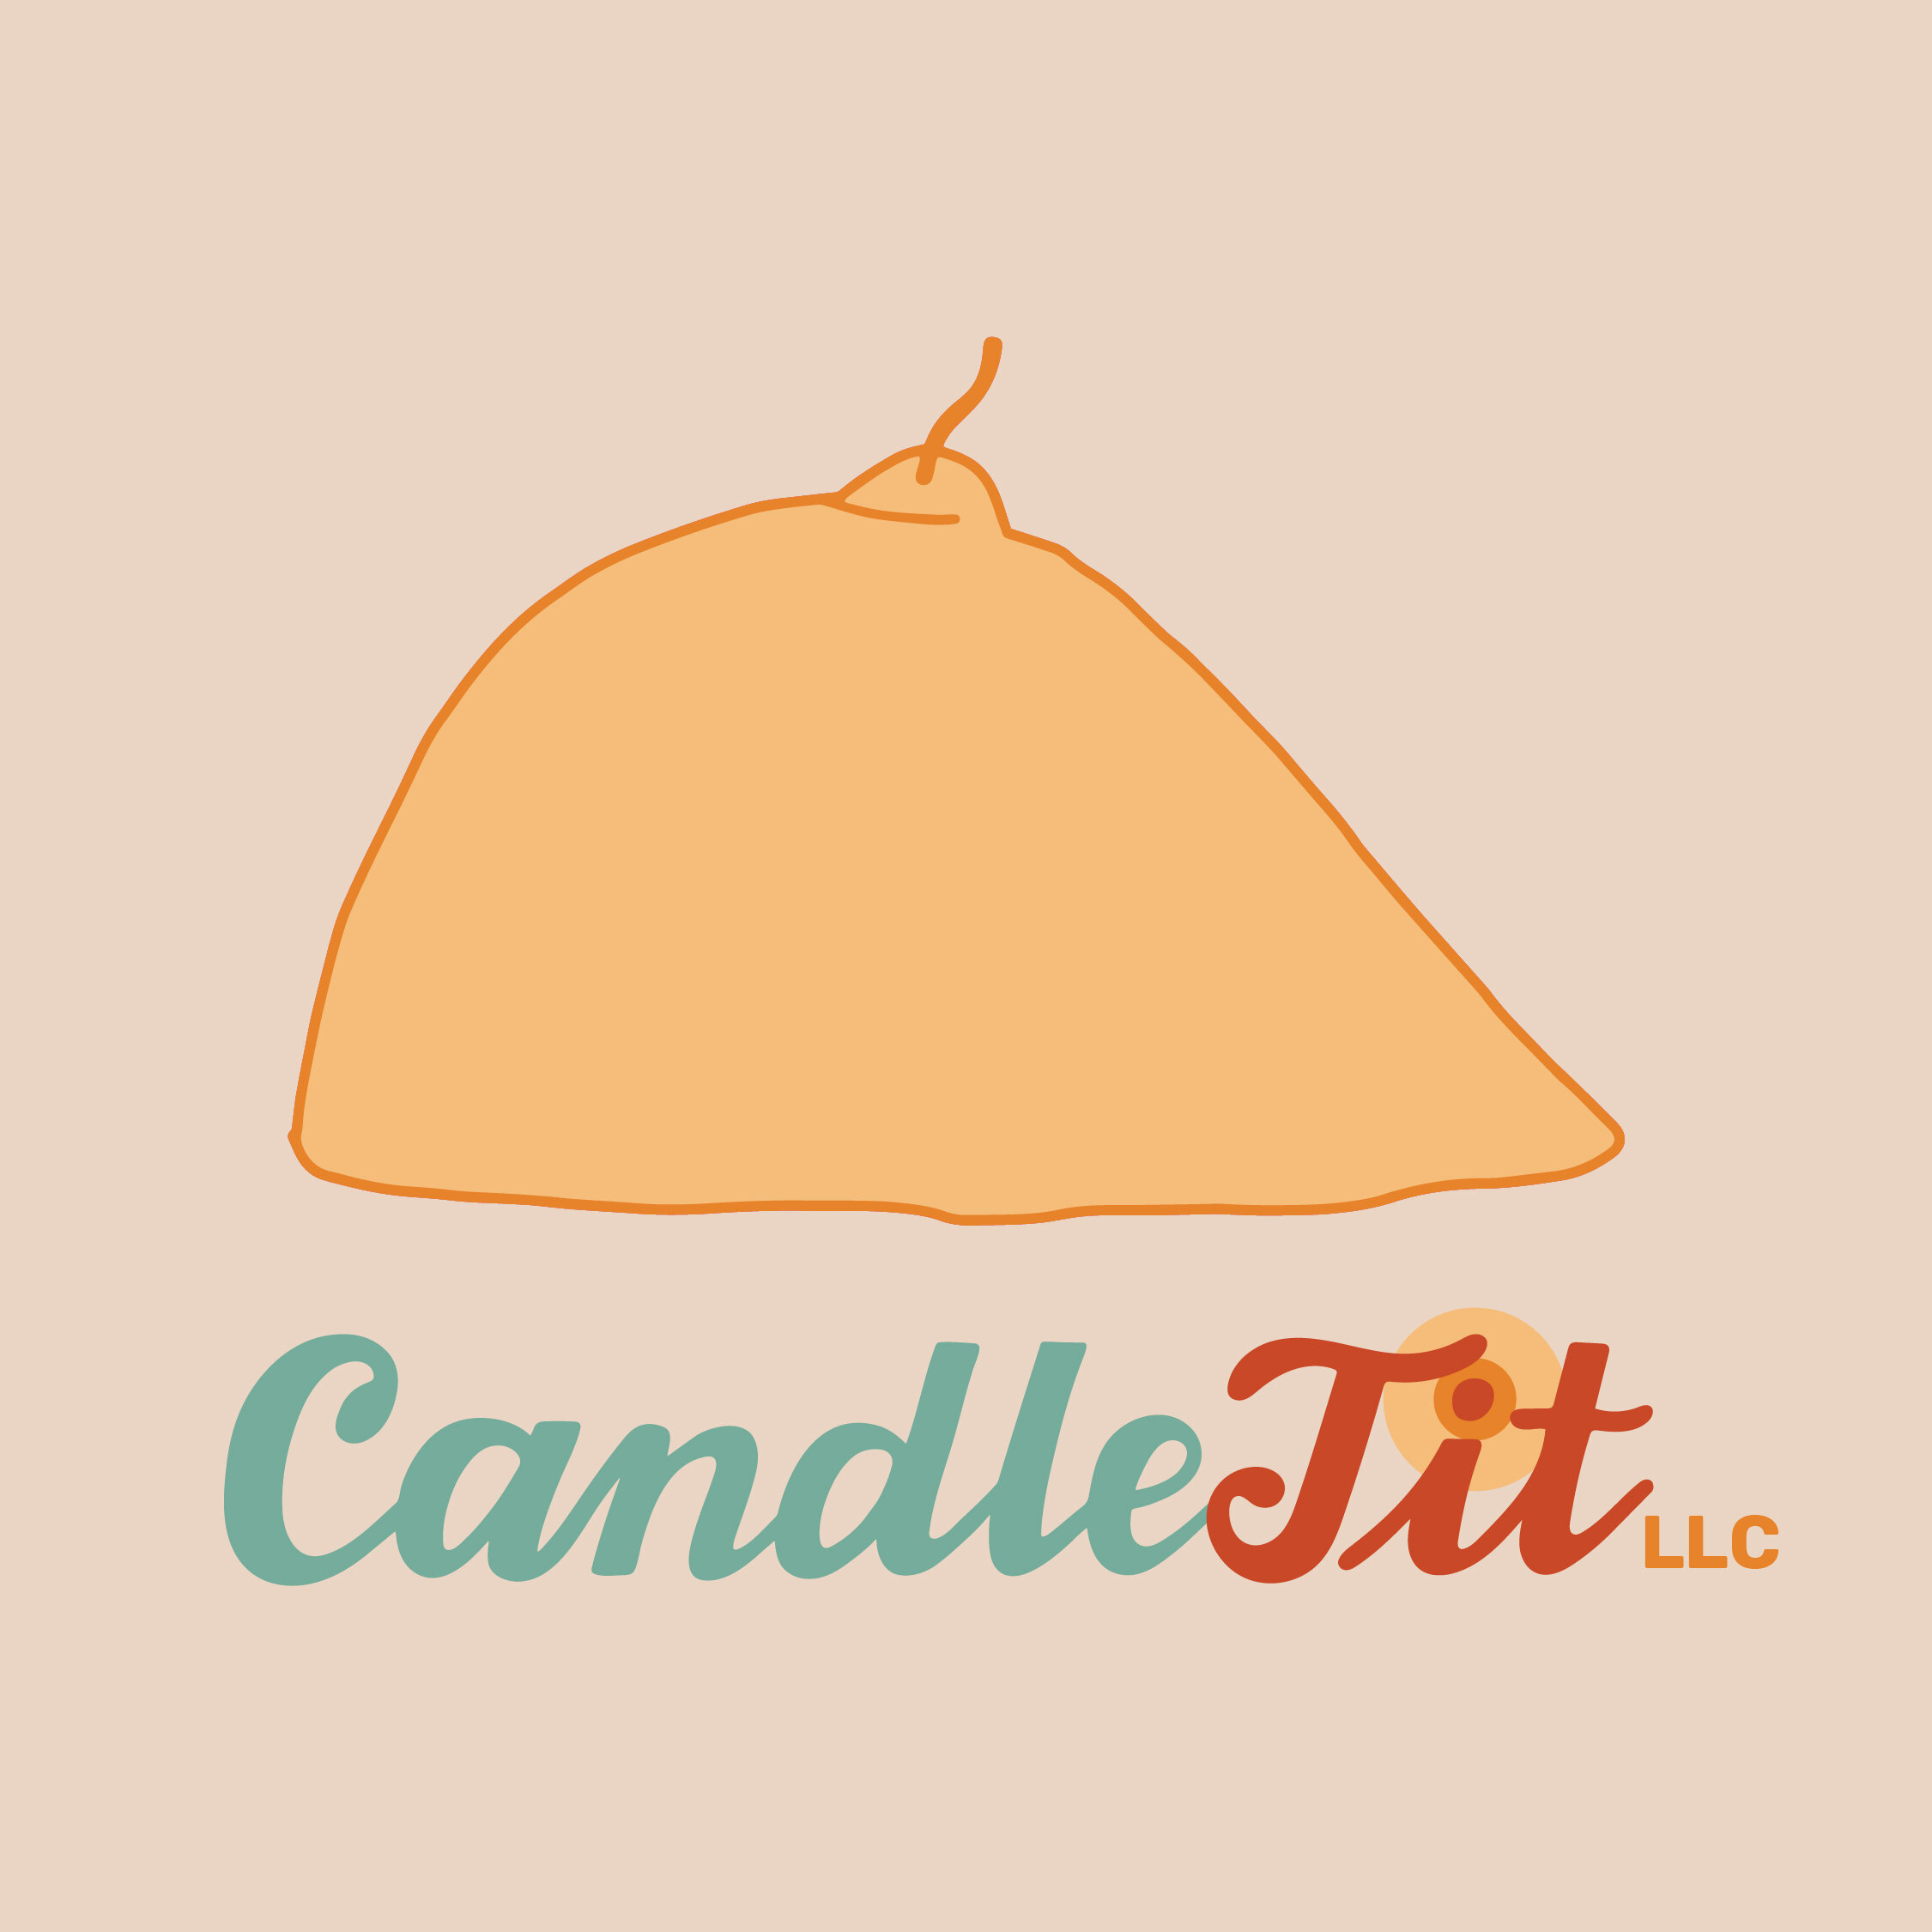 CandleTit-SocialGraphics-LetteringWorks-09.jpg